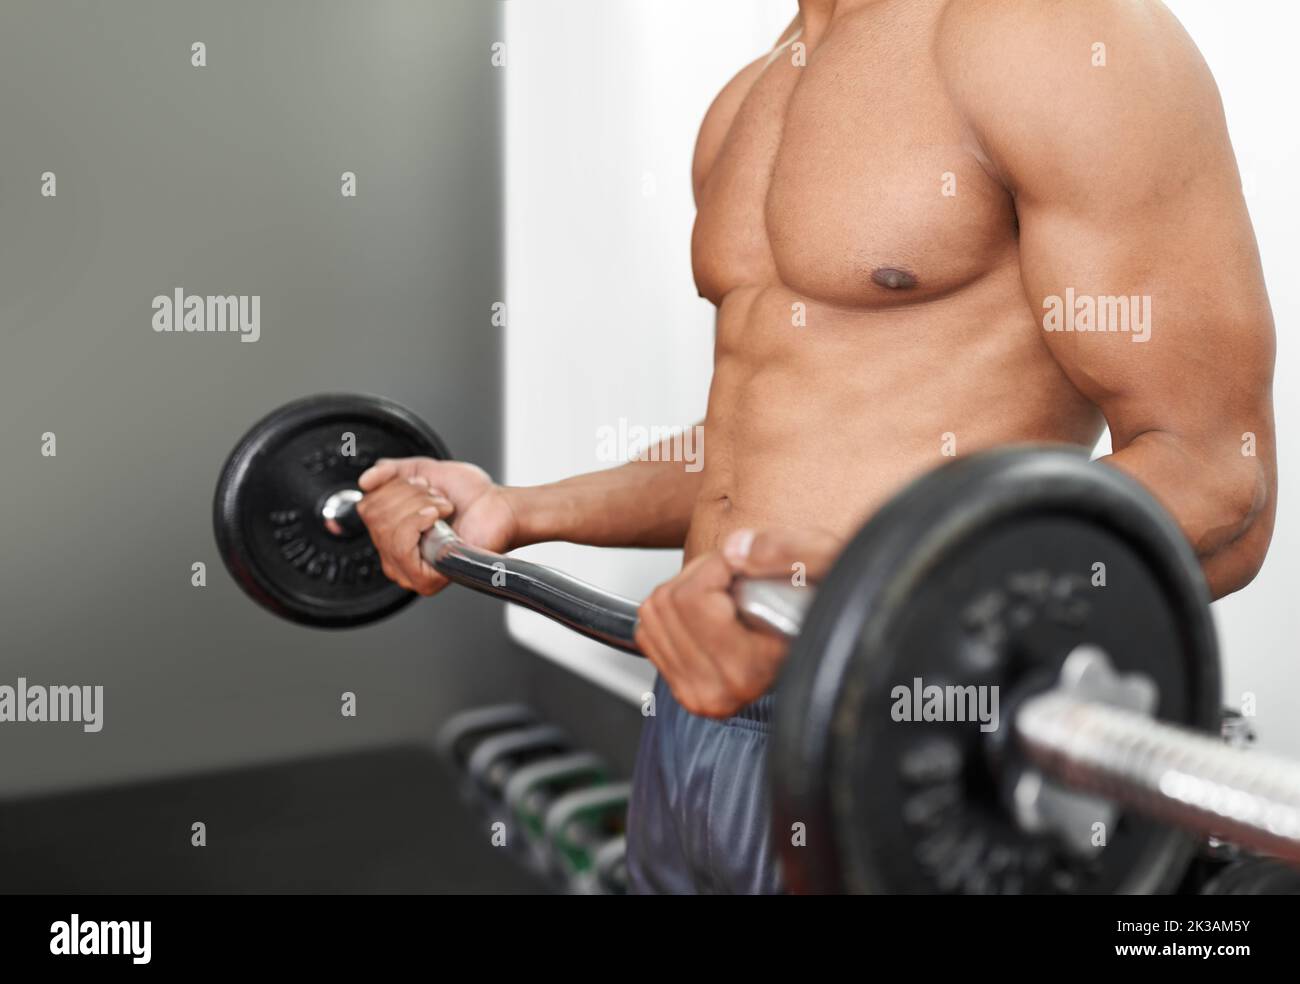 Creare la definizione perfetta del muscolo. Un uomo che fa l'addestramento del peso in una palestra. Foto Stock